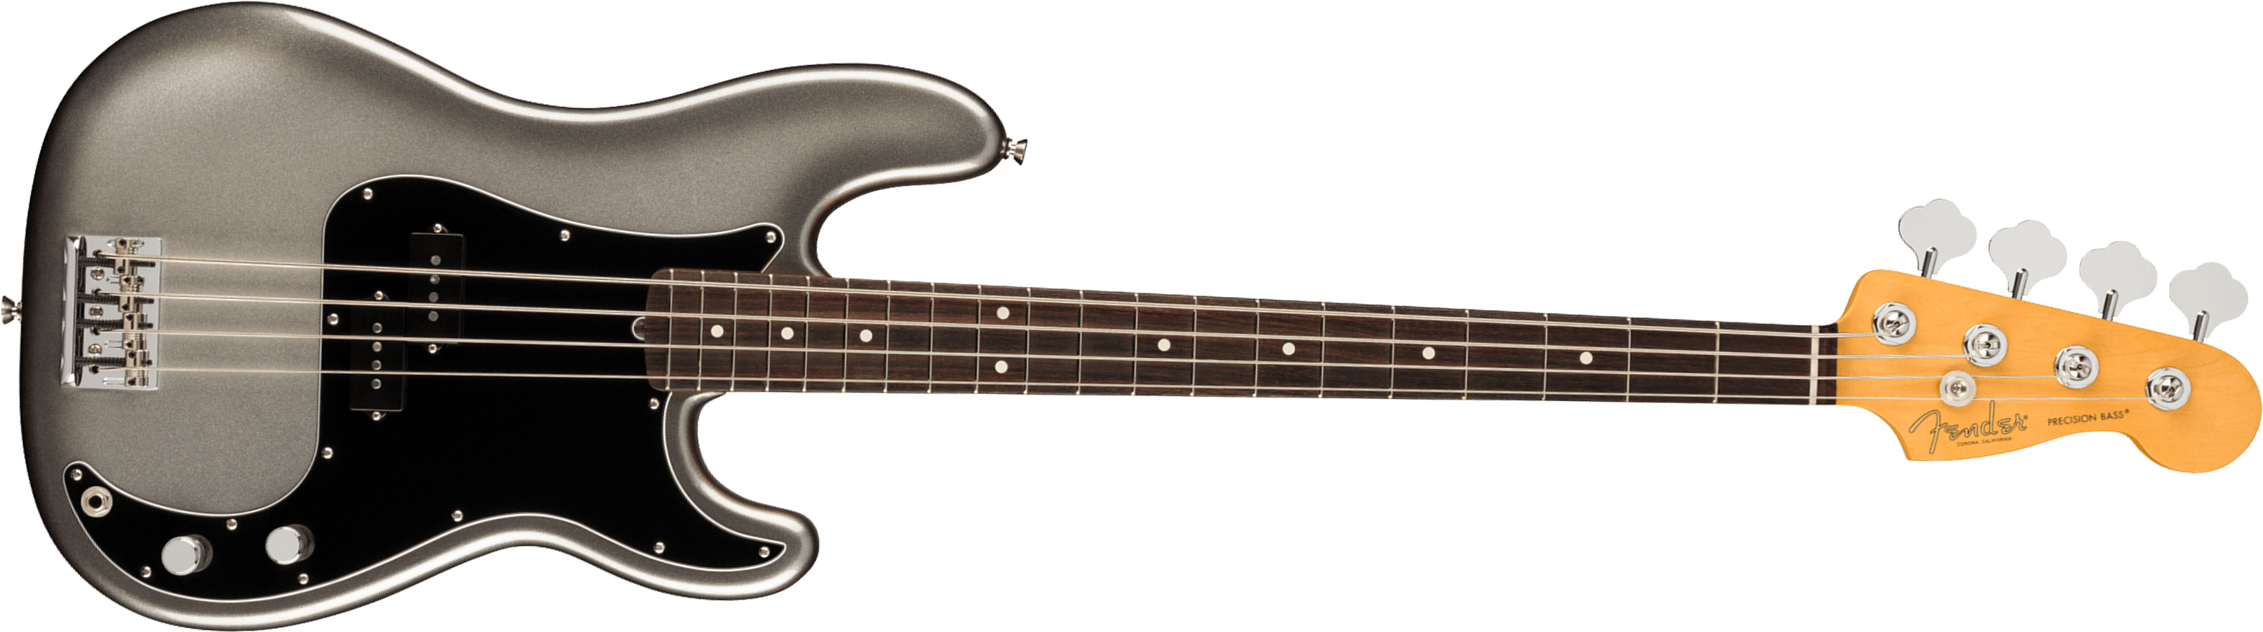 Fender Precision Bass American Professional Ii Usa Rw - Mercury - Bajo eléctrico de cuerpo sólido - Main picture